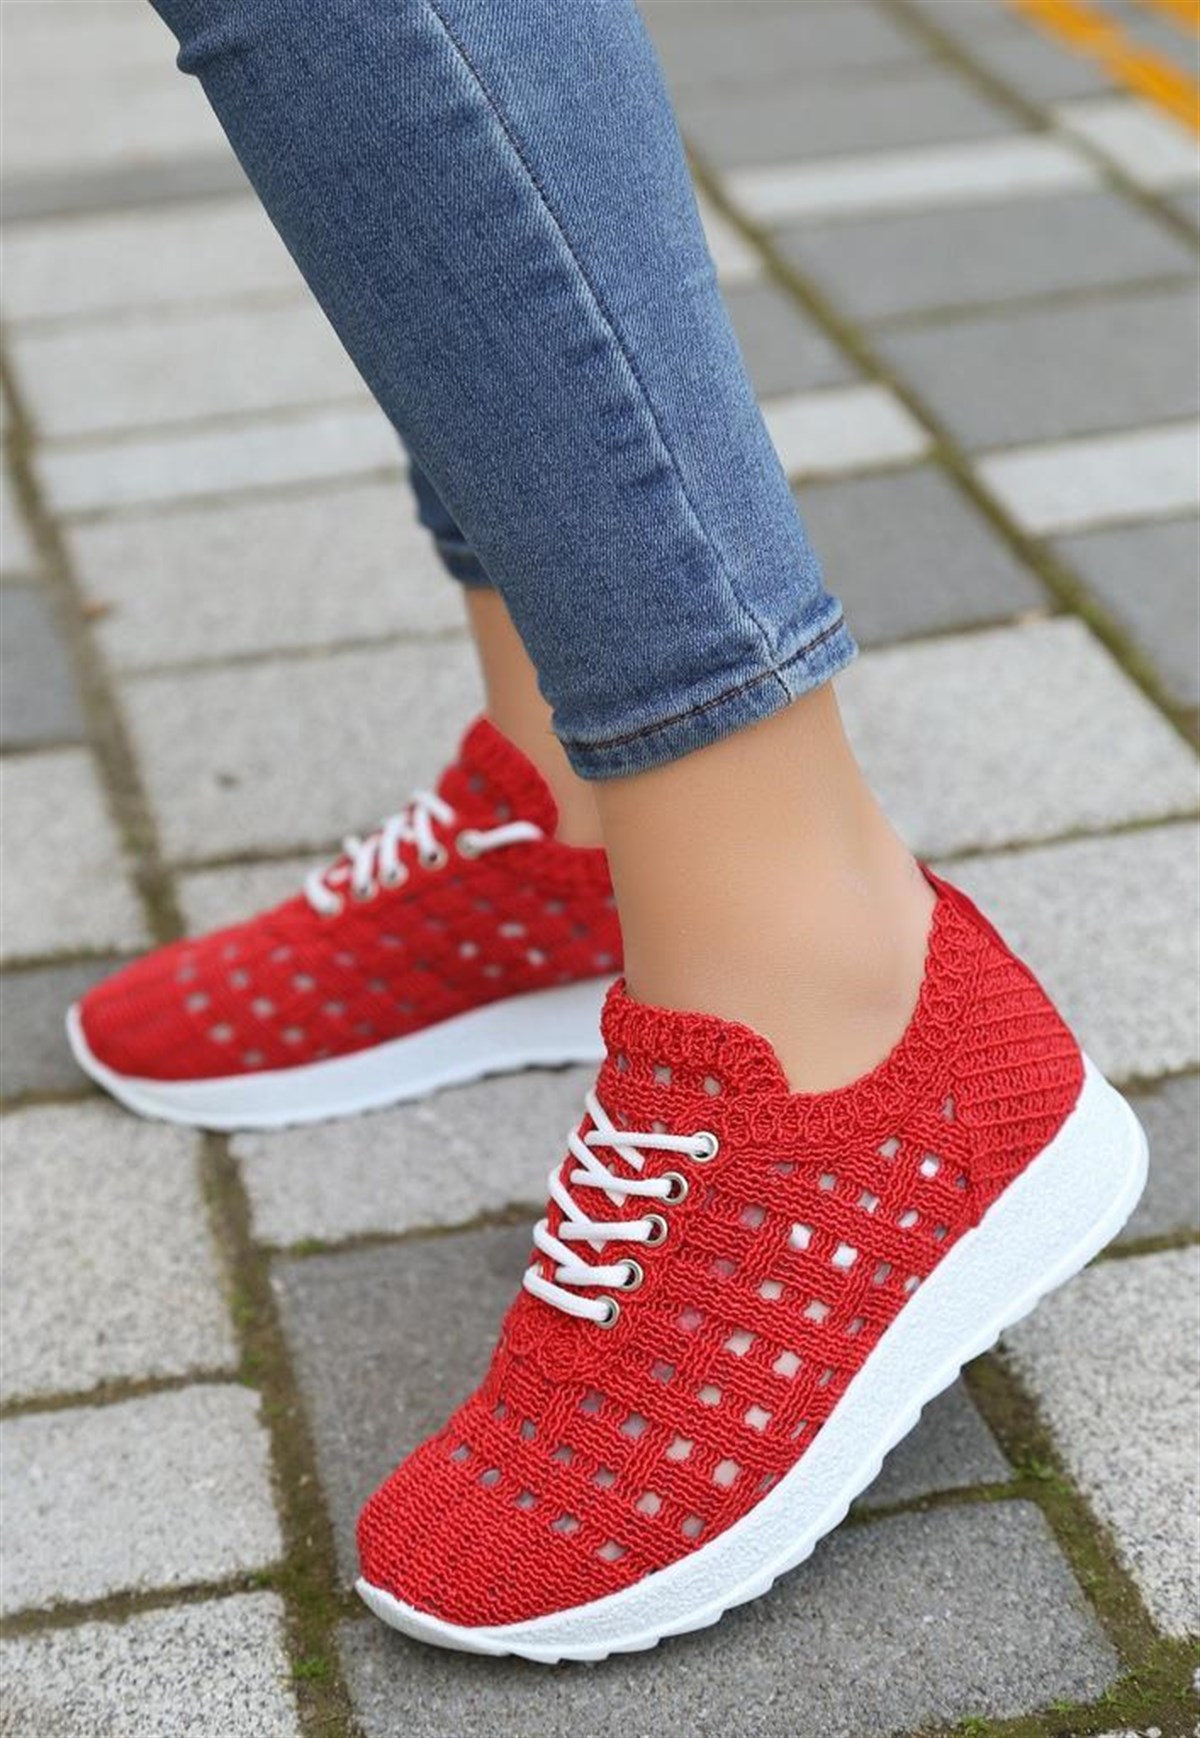 Kadın El Örgüsü Kırmızı Spor Ayakkabı Belen - Bitmedeniste.com